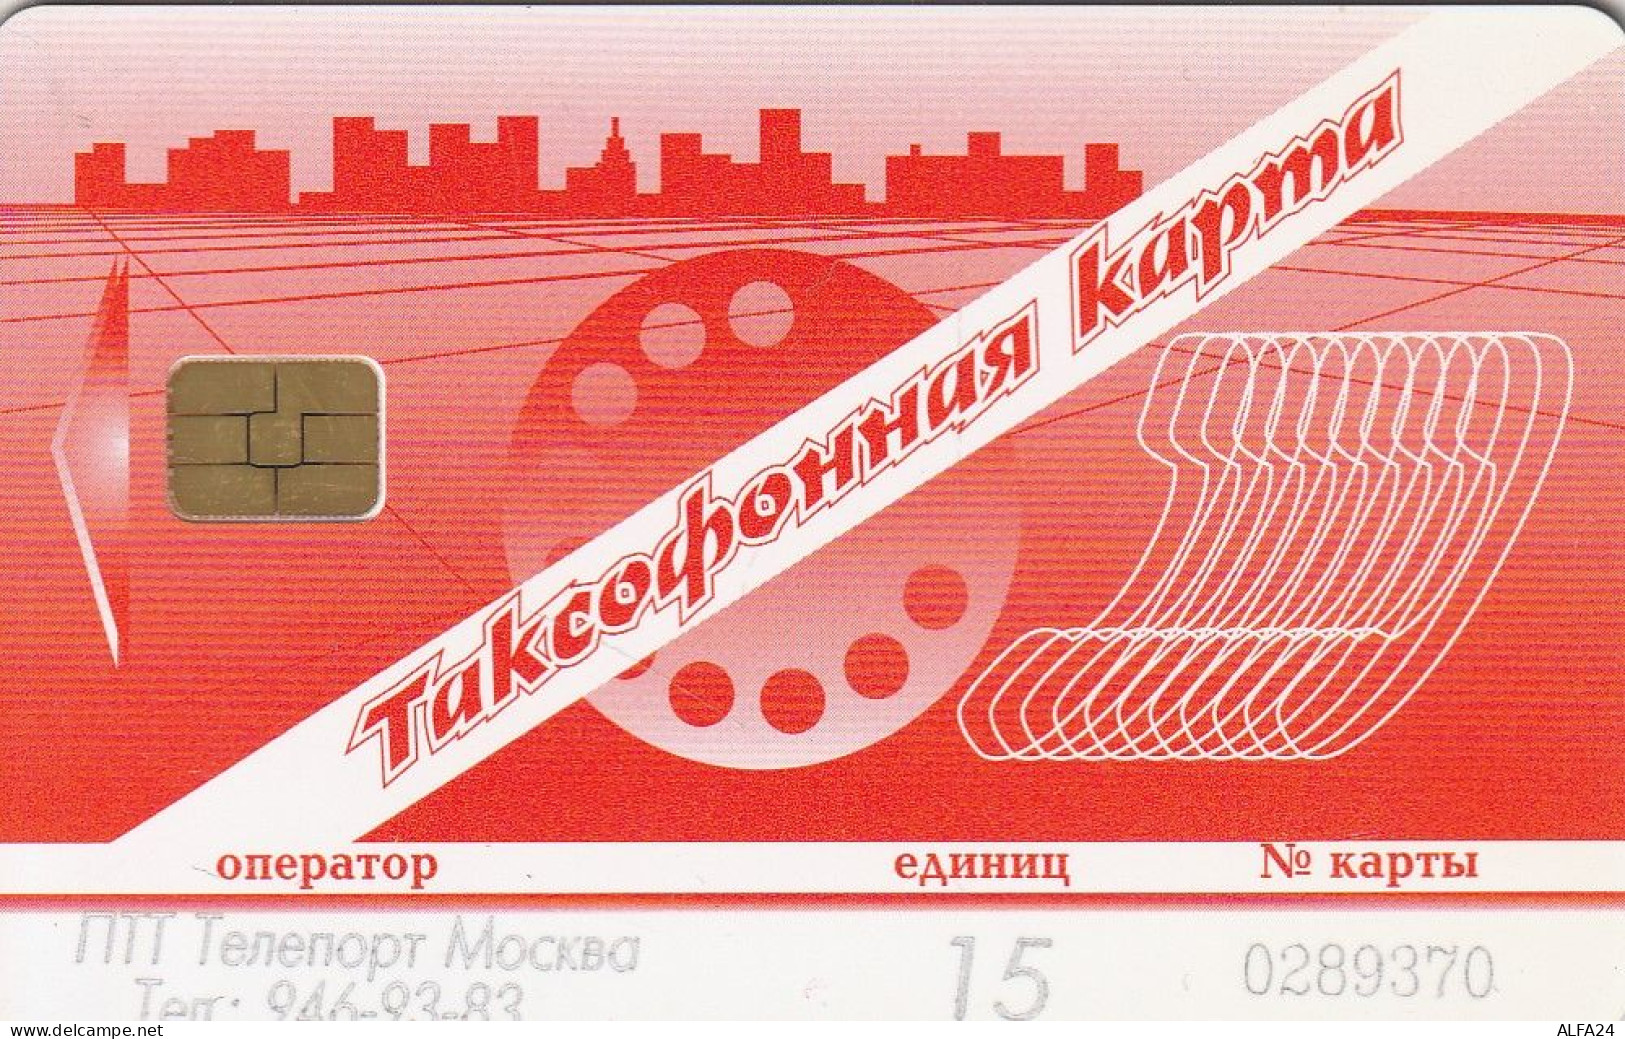 PHONE CARD RUSSIA CentrTelecom And Moscow Region (E67.26.7 - Russia